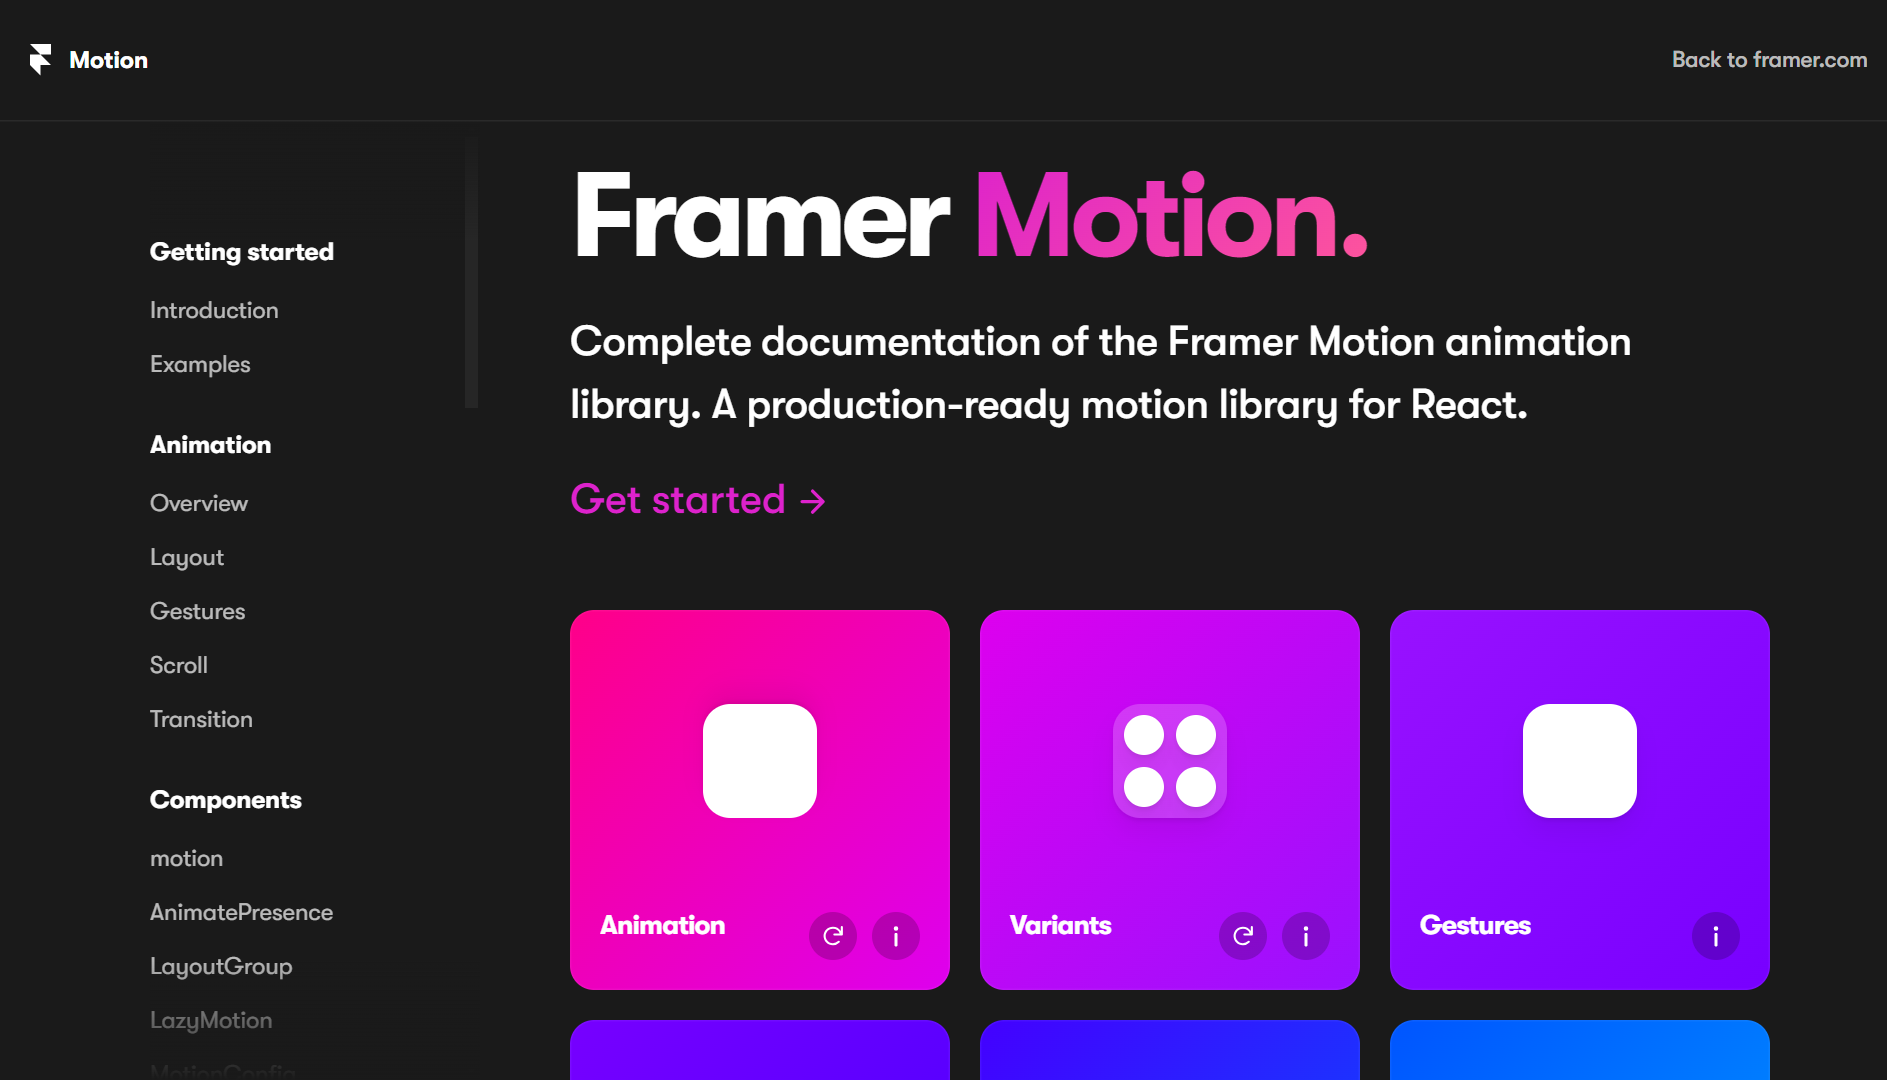 Framer Motion homepage